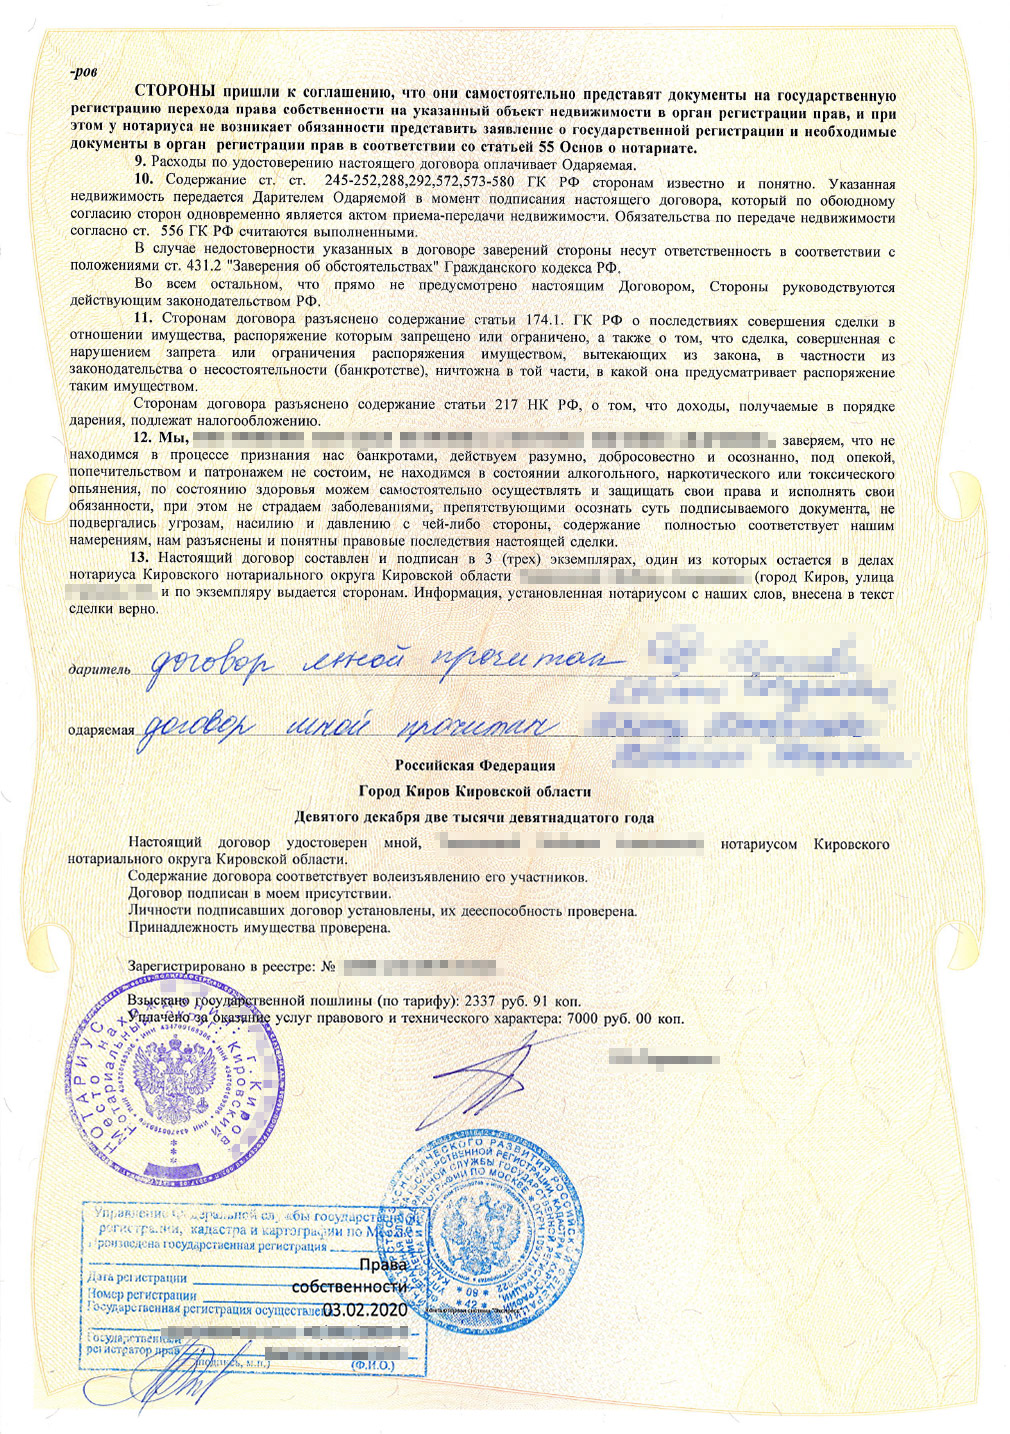 На мамином экземпляре договора в Росреестре поставили отметки о госрегистрации права собственности